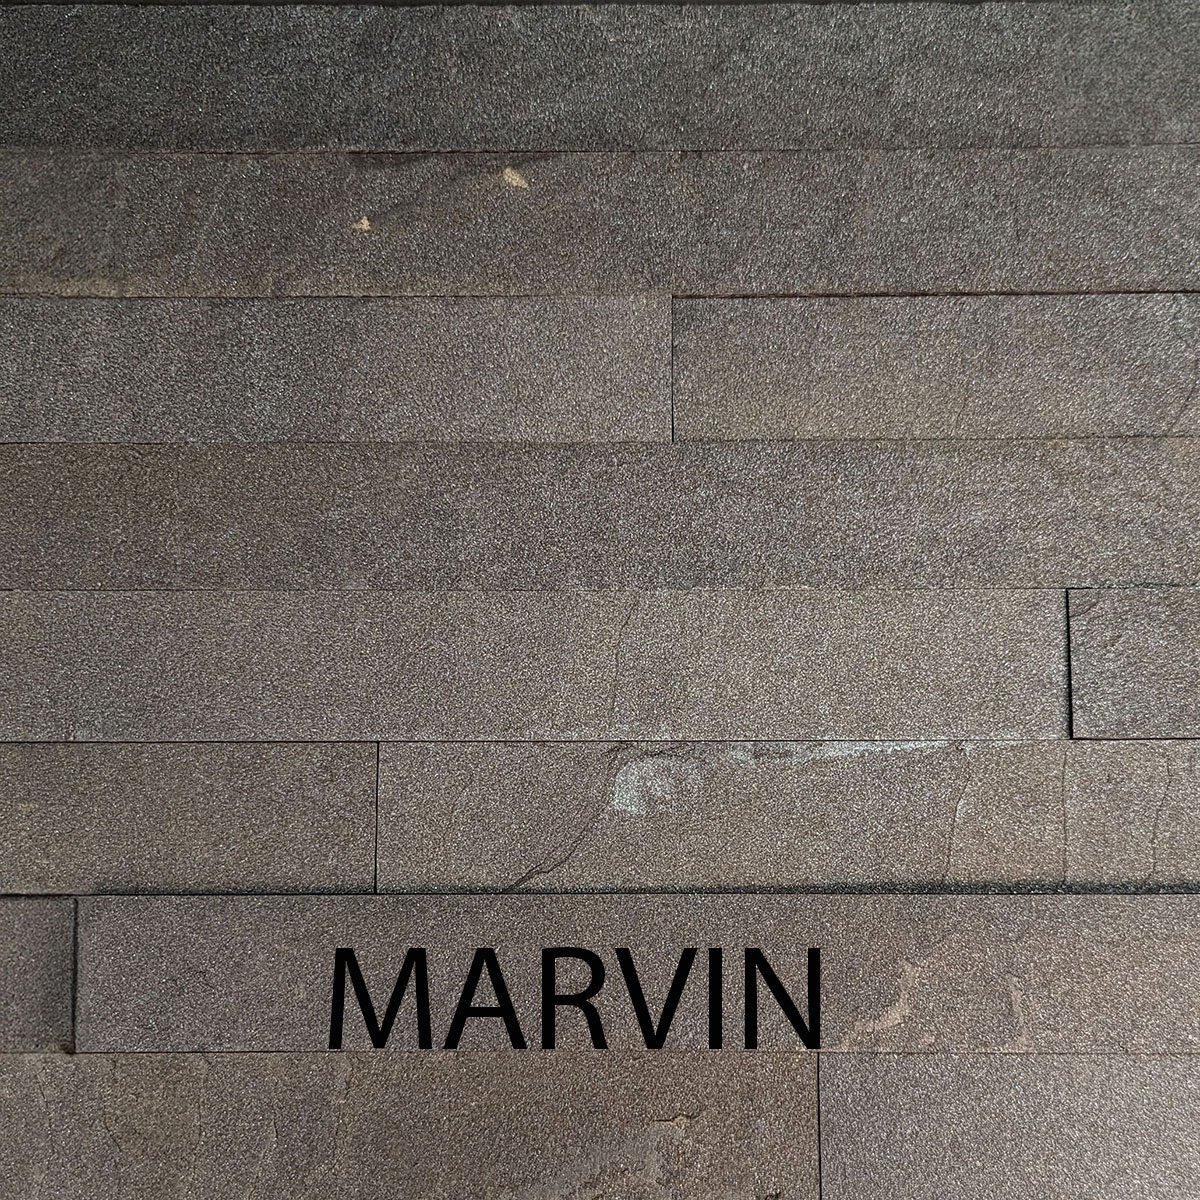 MARVIN copy.jpg